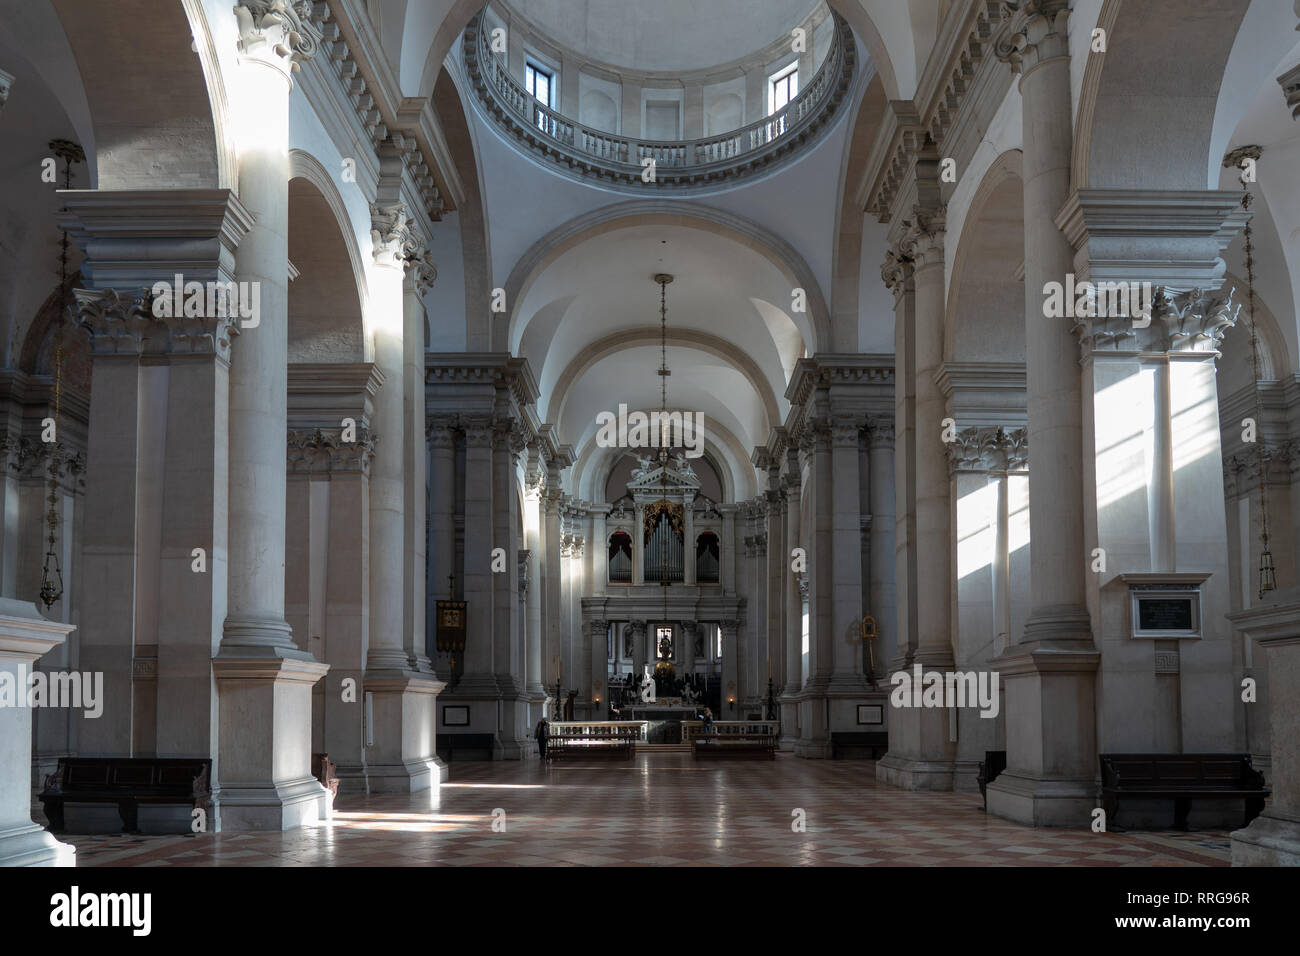 La Chiesa del Santissimo Redentore di Venezia. Da una serie di foto di viaggio in Italia. Foto Data: Domenica, 10 febbraio 2019. Foto: Roger Garfiel Foto Stock